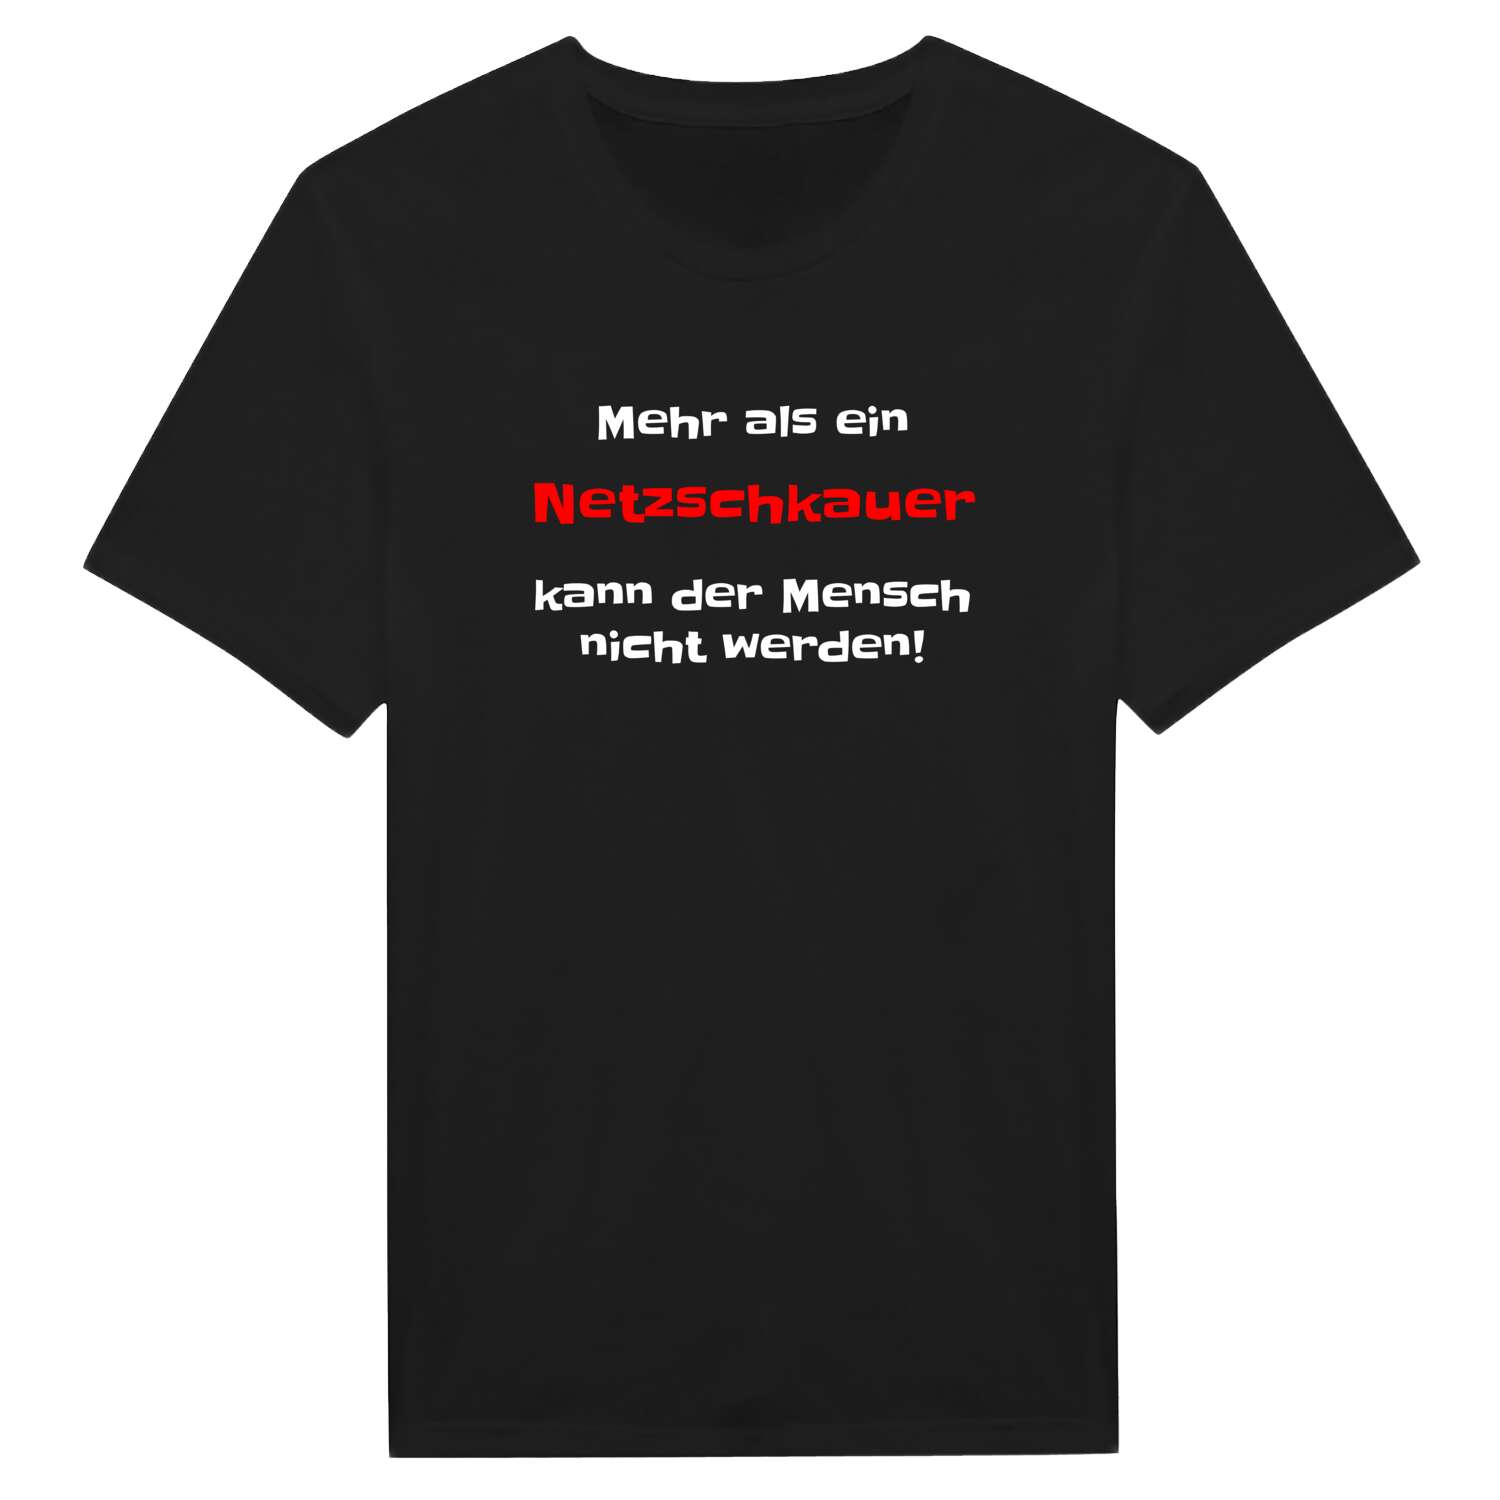 Netzschkau T-Shirt »Mehr als ein«